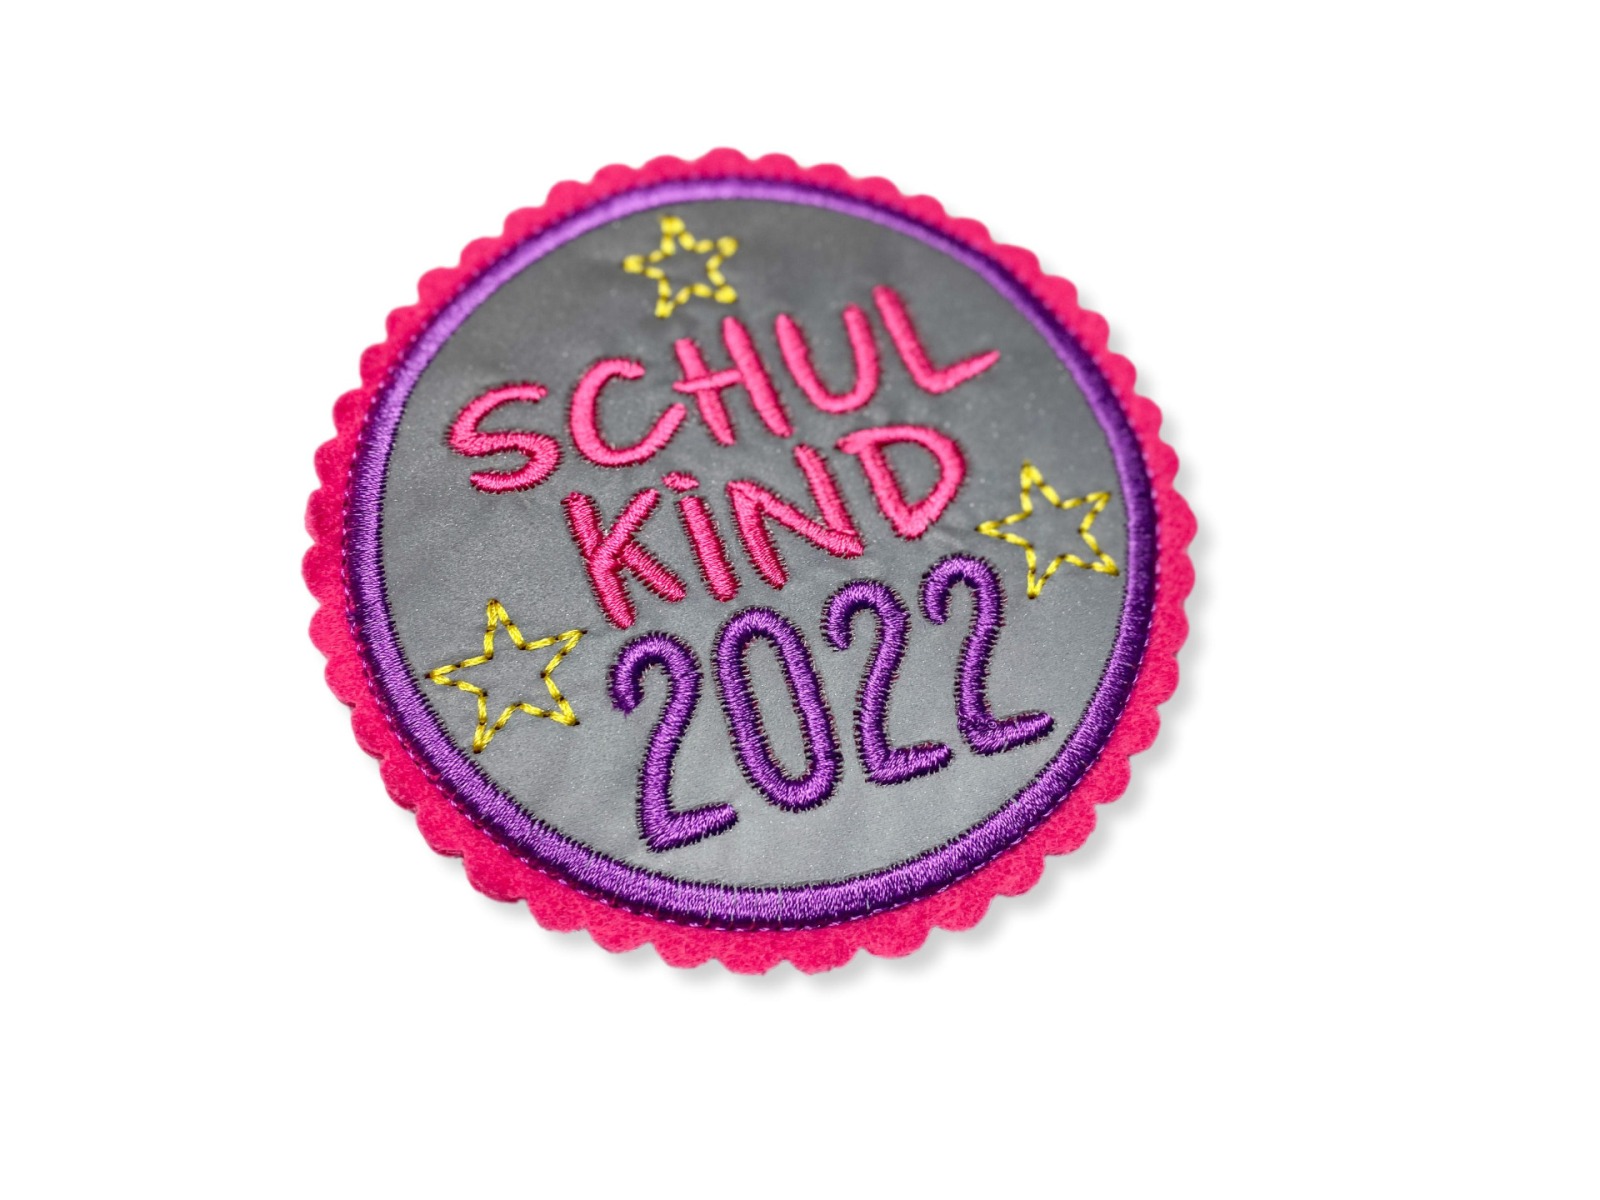 Kletti Schulkind 2022 10cm Durchmesser Reflektorstoff pink lila Einschulung für den Schulranzen 5